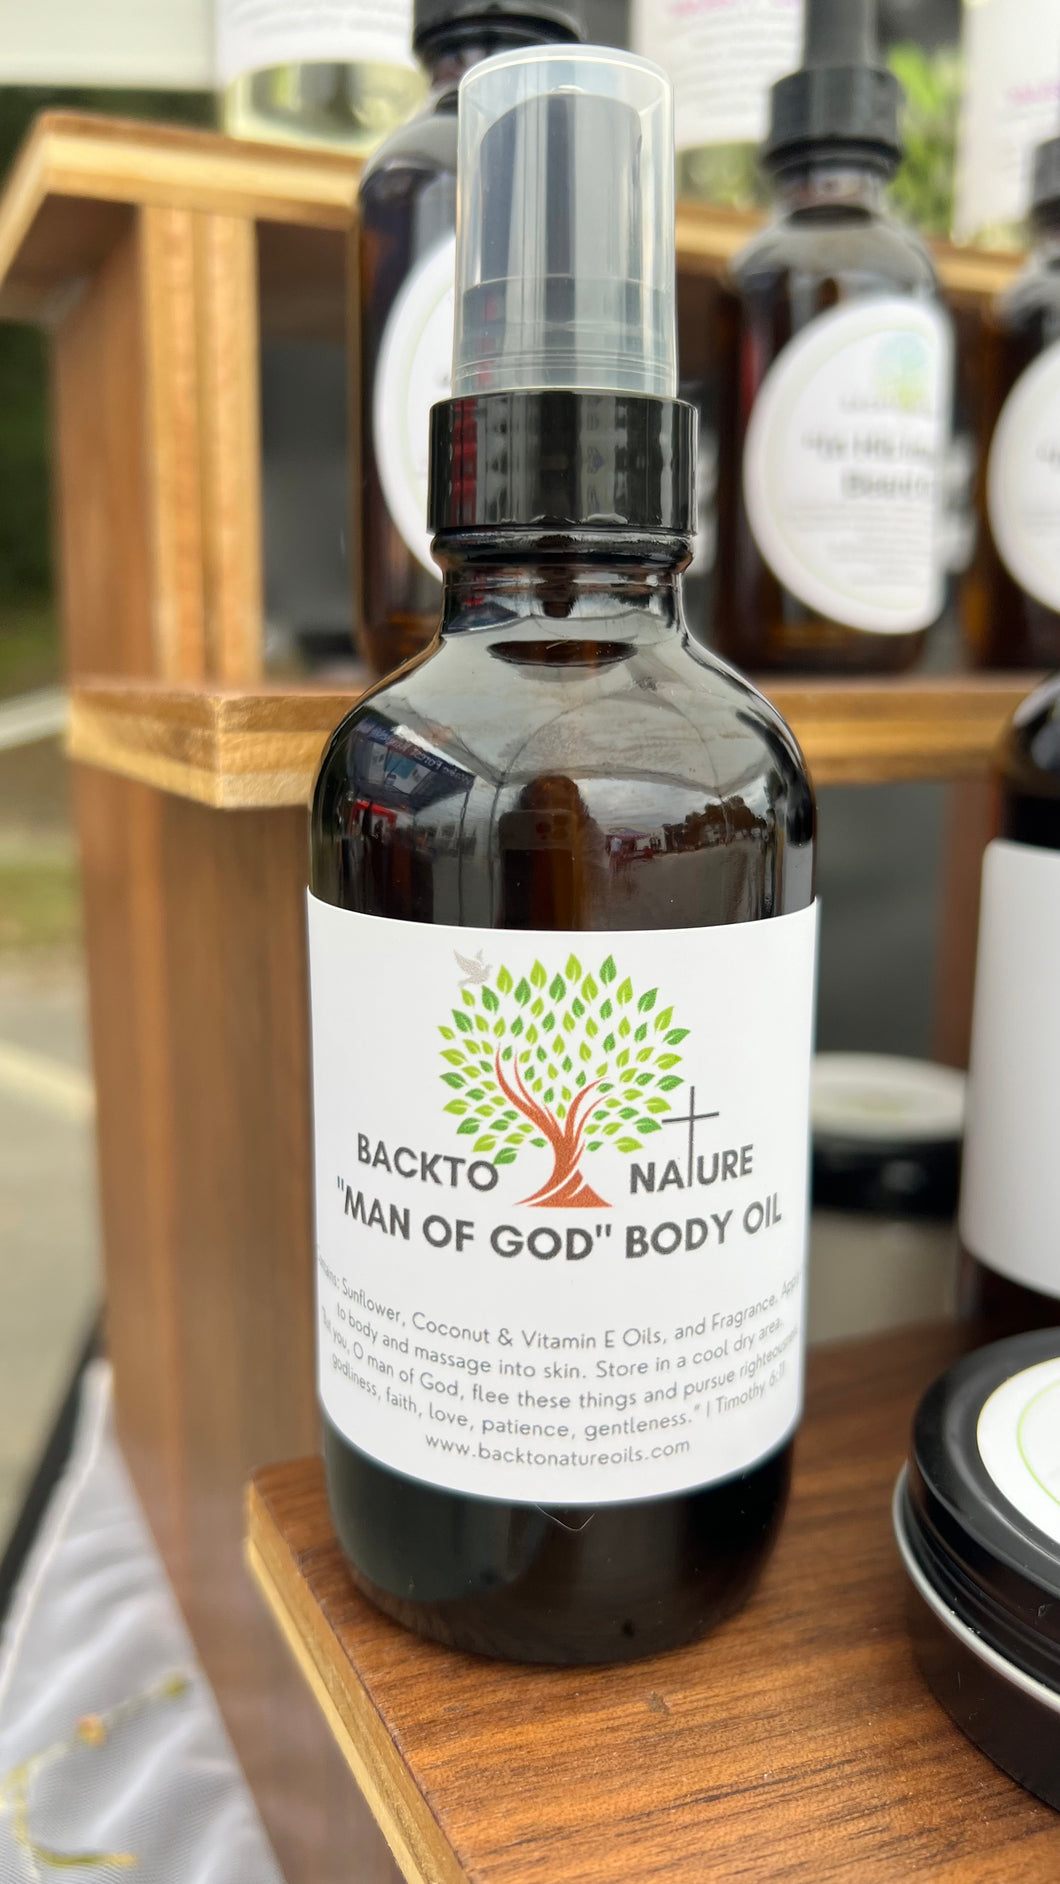 “Man of God” Body Oil